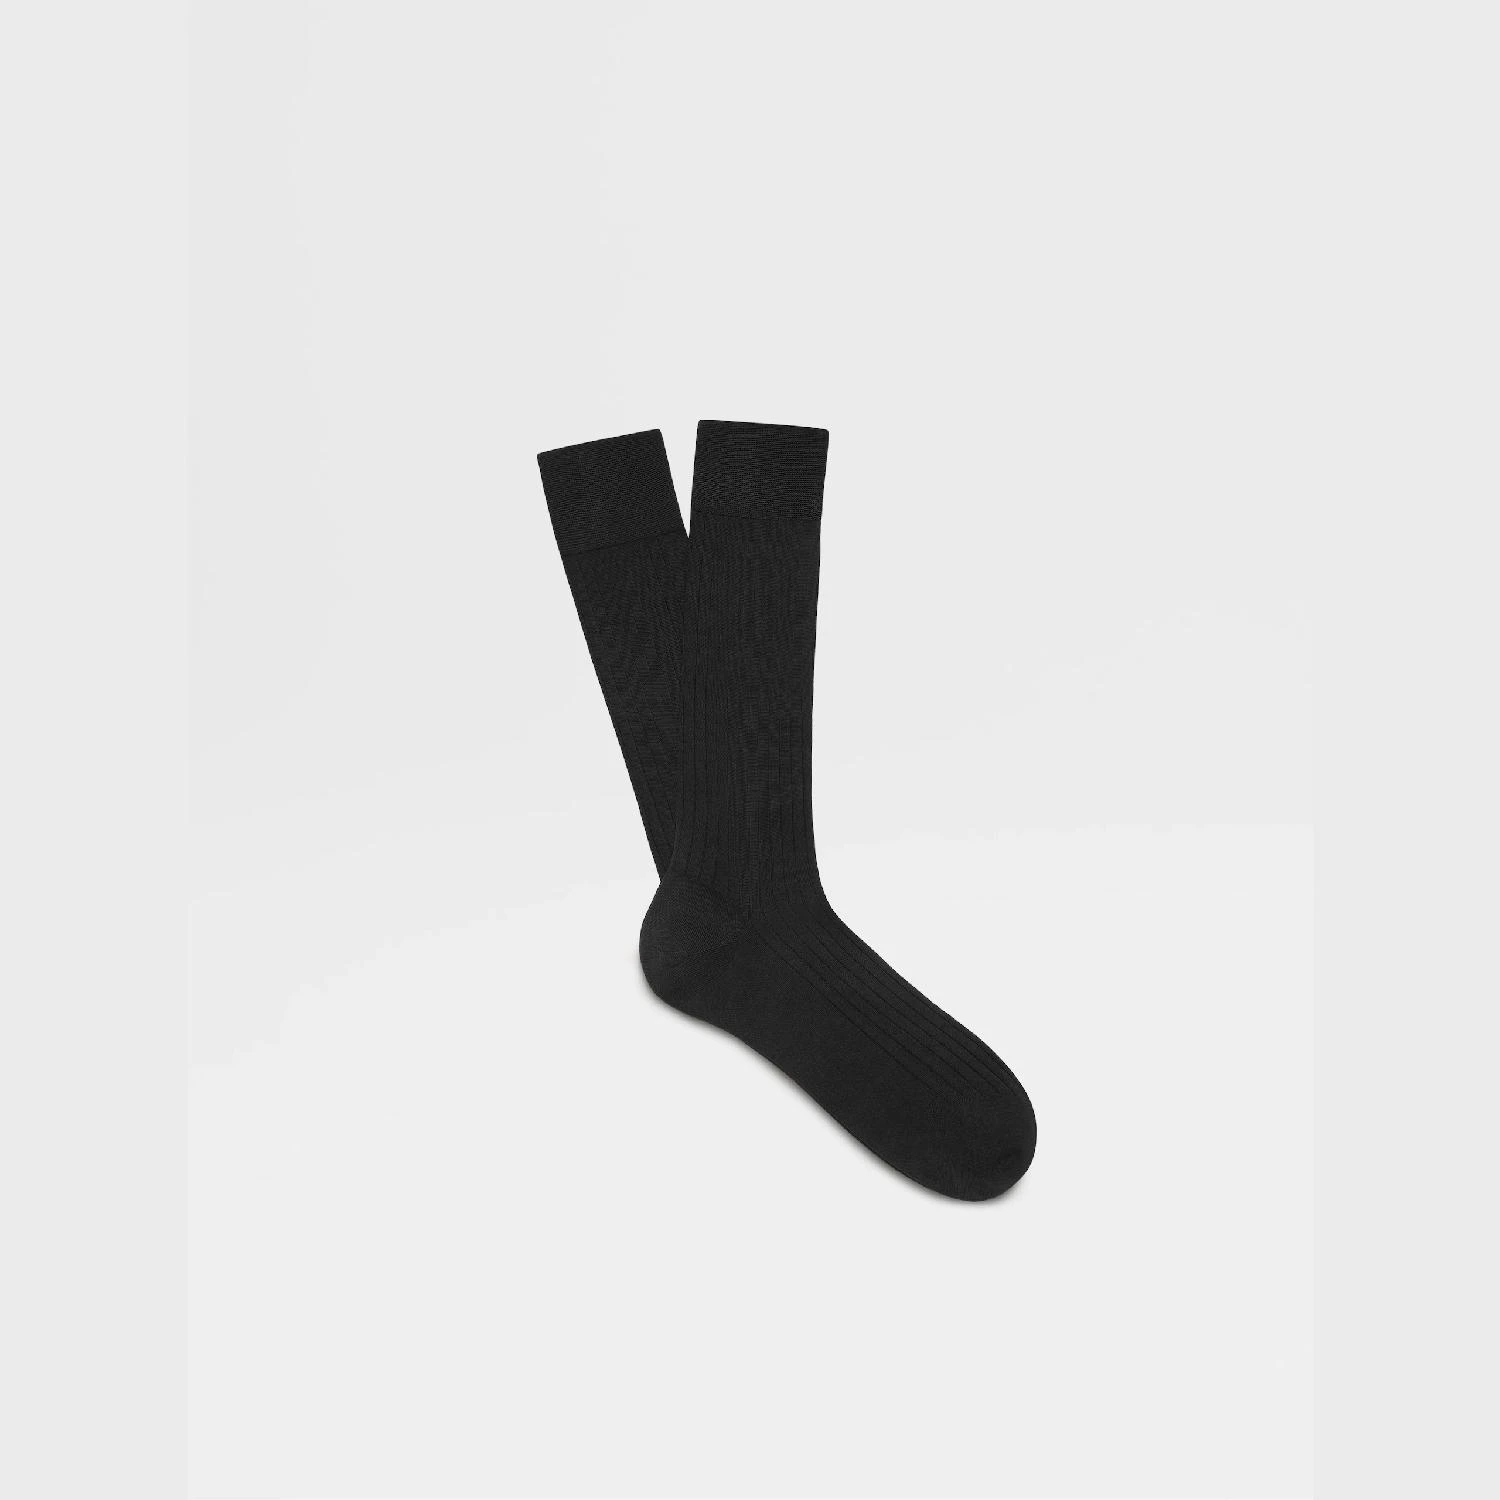 包邮包税【预售7天发货】 ZEGNA杰尼亚 23秋冬 男士 袜子 Black Cotton Socks N4V40-011-001 商品